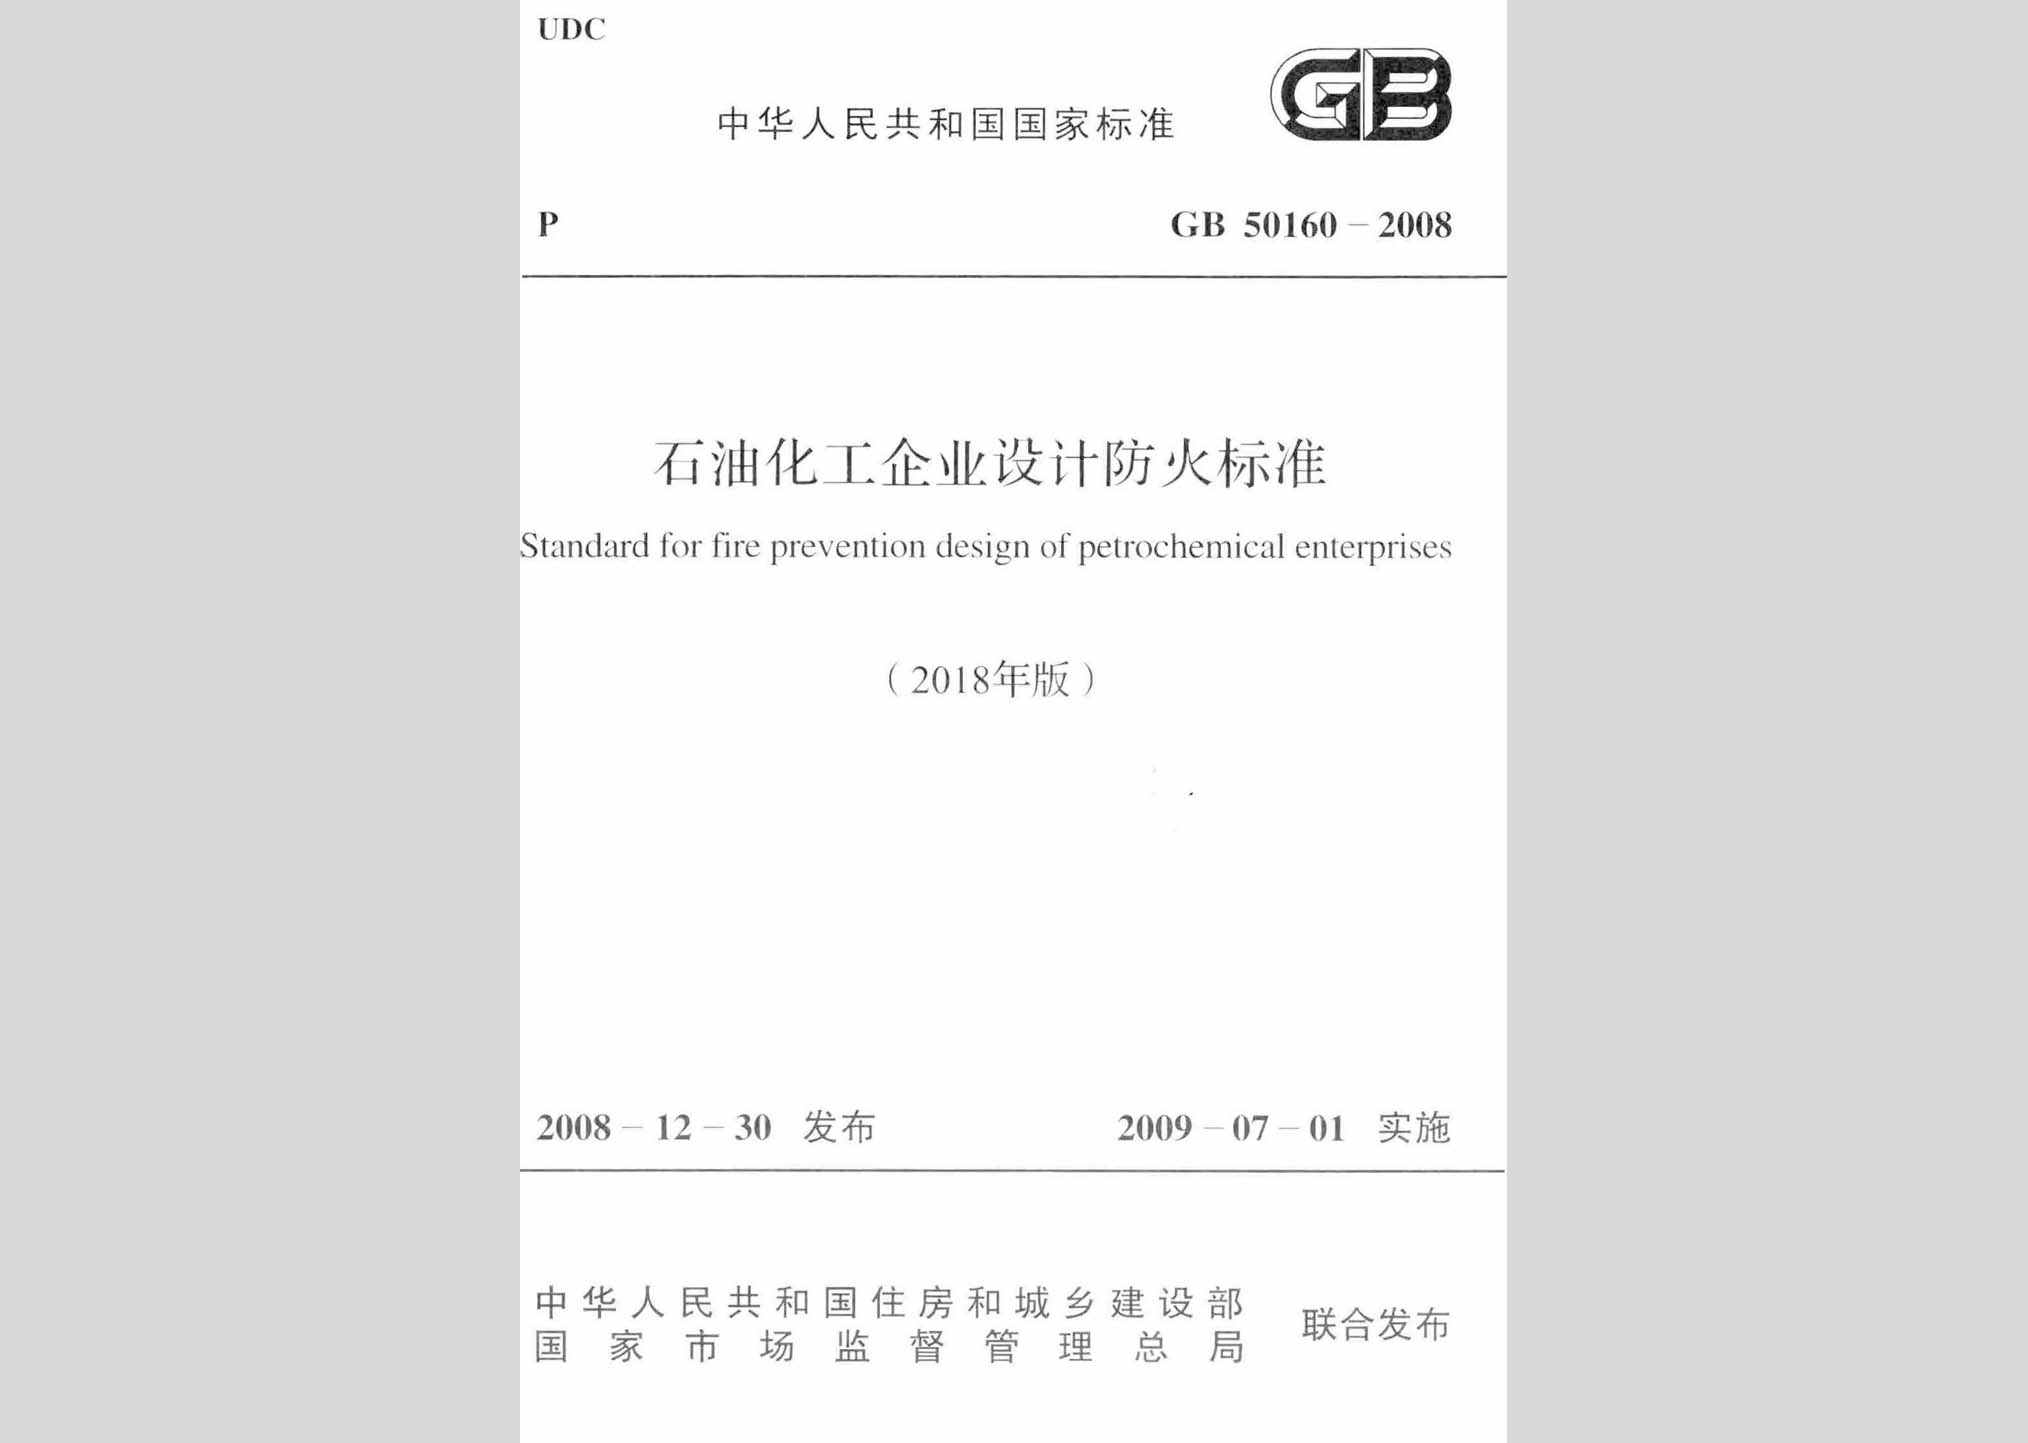 GB50160-2008(2018年版)：石油化工企业设计防火标准(2018年版)